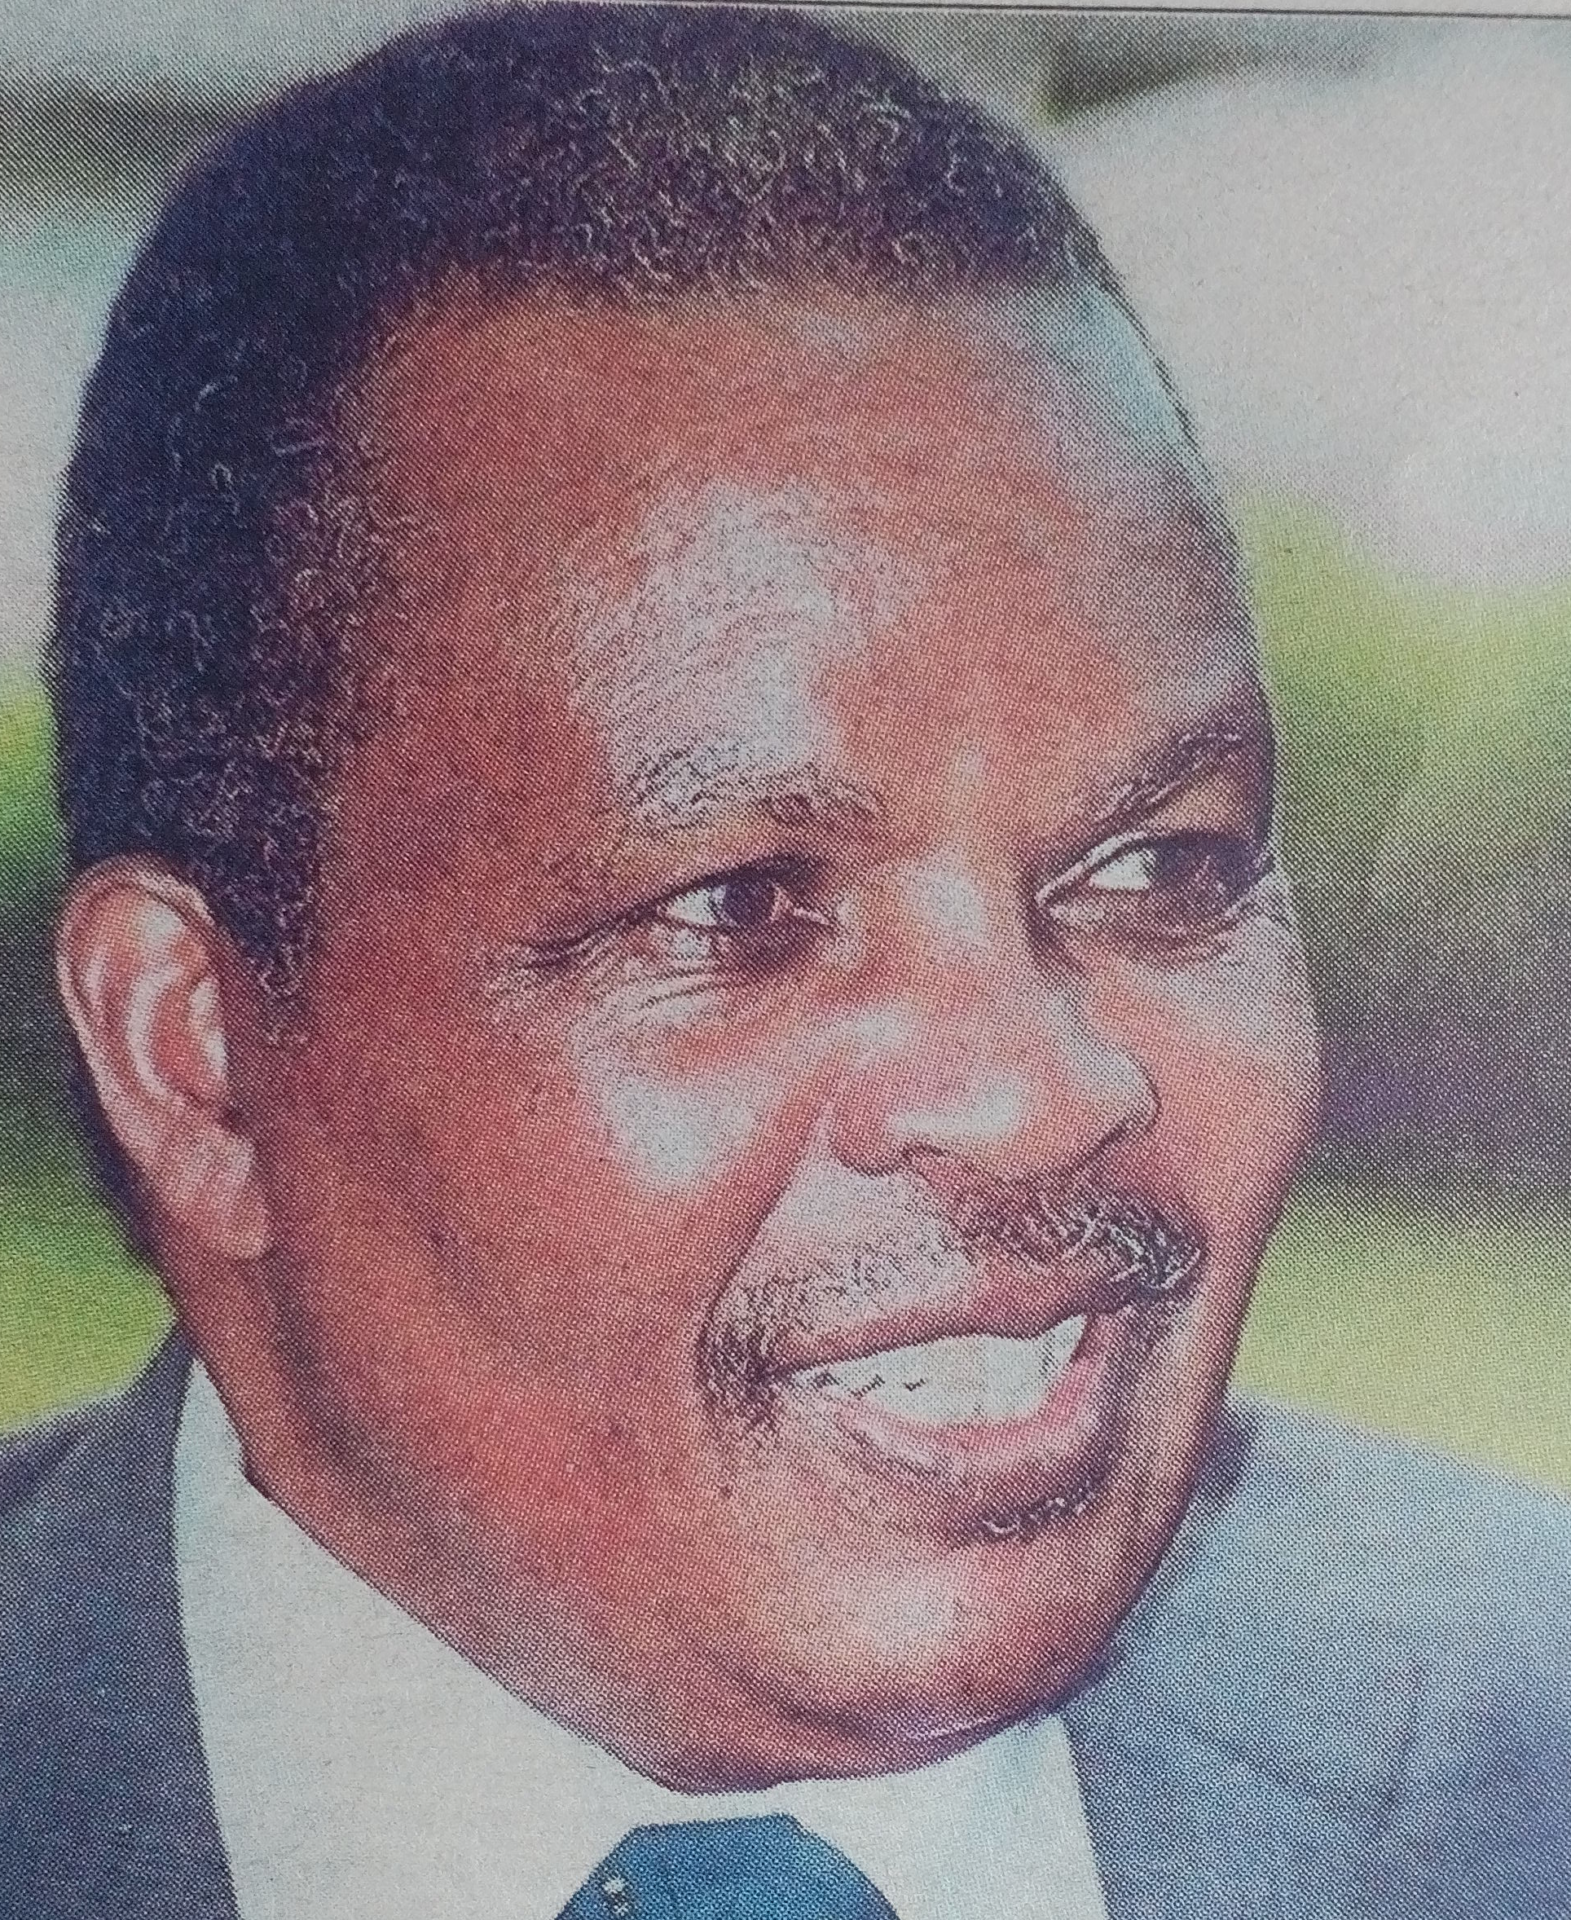 Obituary Image of Isaac Mwai Kihara